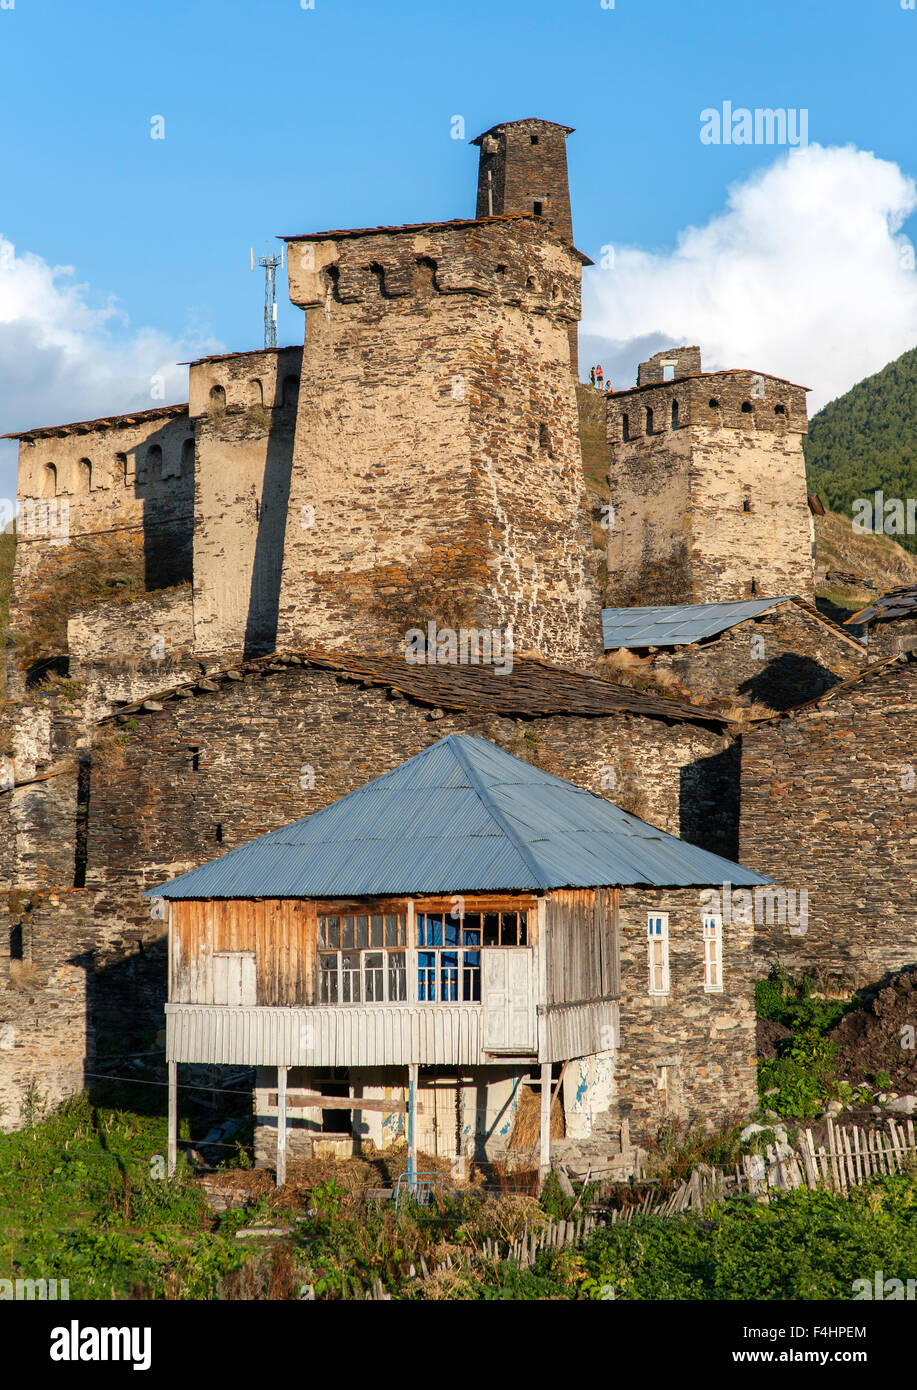 Chazhashi, una delle quattro frazioni comprendente Ushguli comunità nel distretto di Svaneti, montagne del Caucaso settentrionale, Georgia. Foto Stock